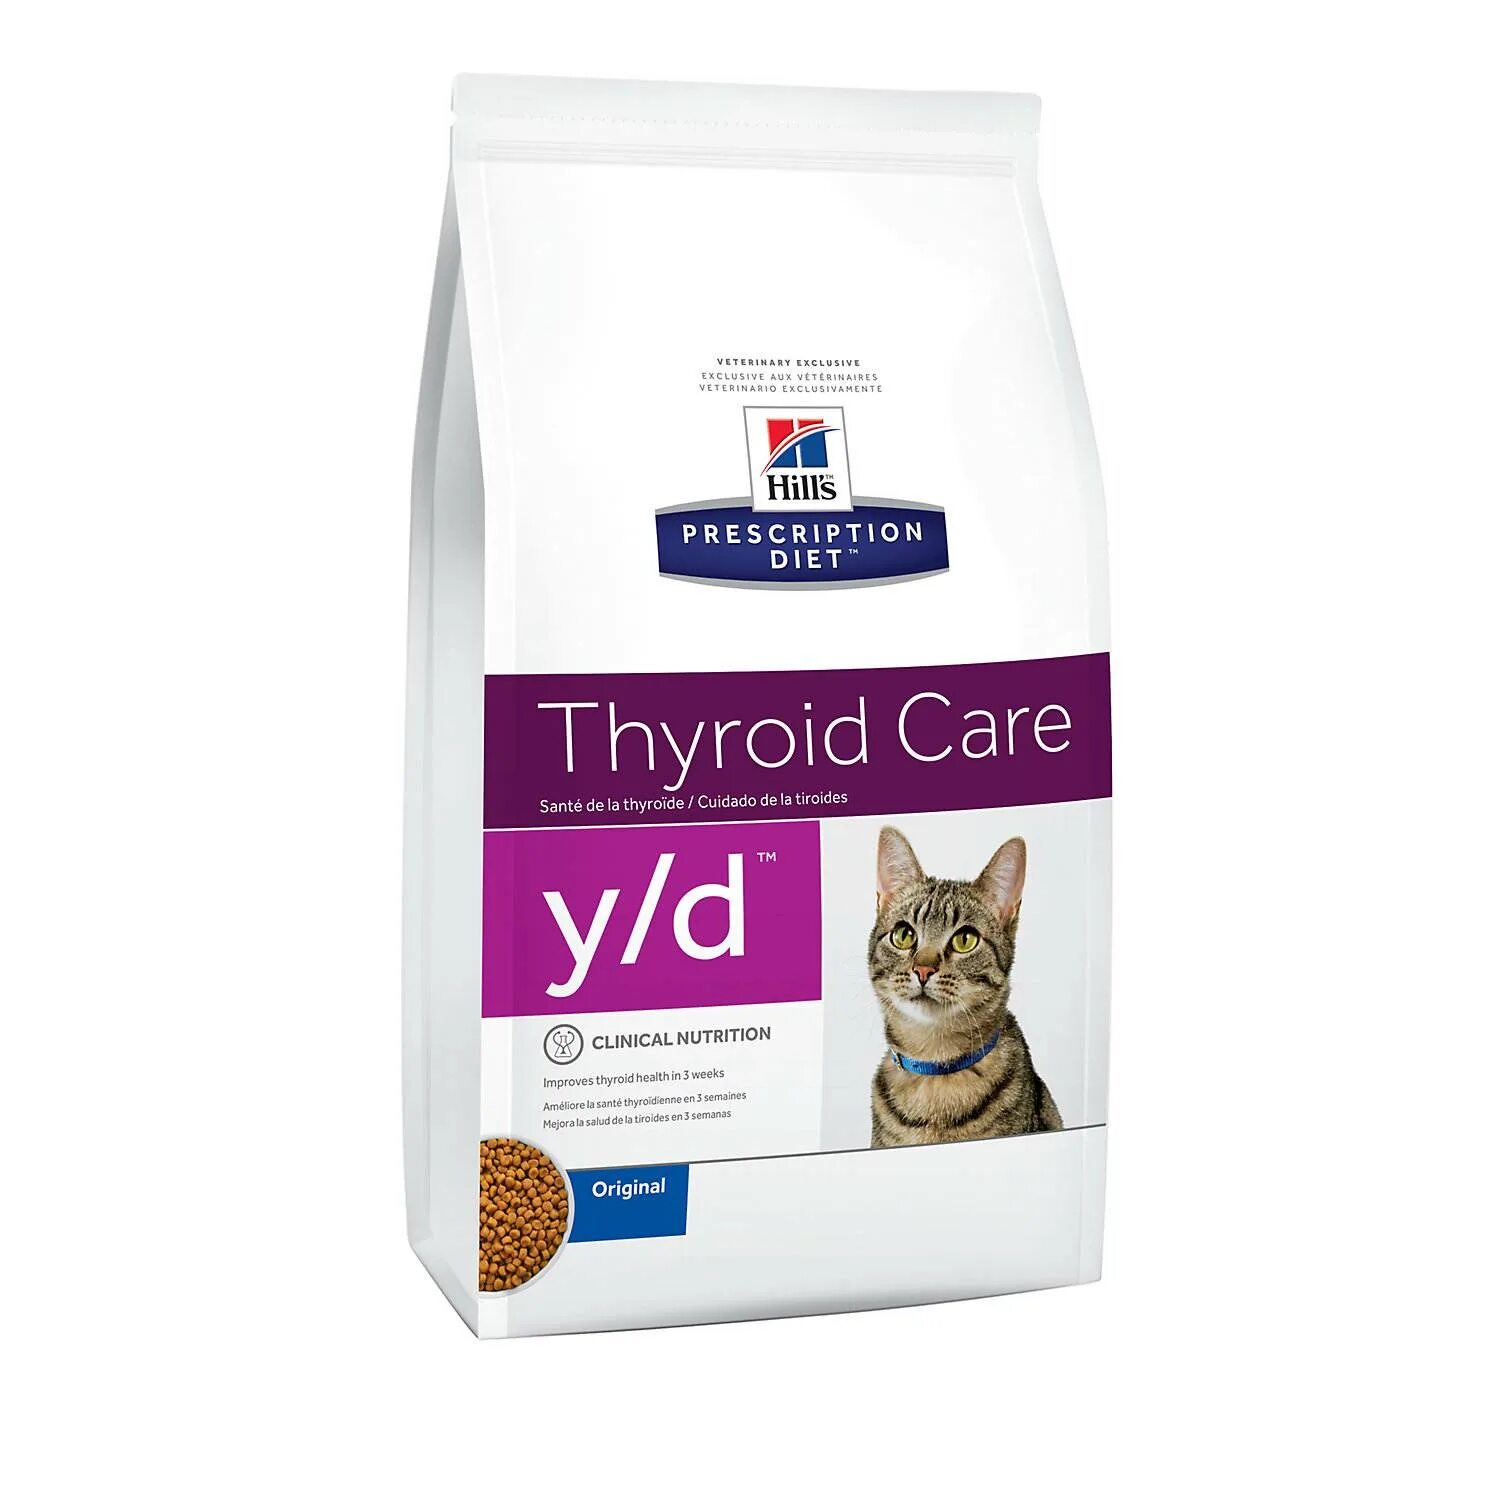 Альфа пет отзывы ветеринаров. Hill's Prescription Diet y/d Thyroid Care. Артикул: 33622 корм Hill's Prescription Diet y/d Thyroid Care. Hills Prescription Diet Thyroid Care. Корм Хиллс y/d для кошек.